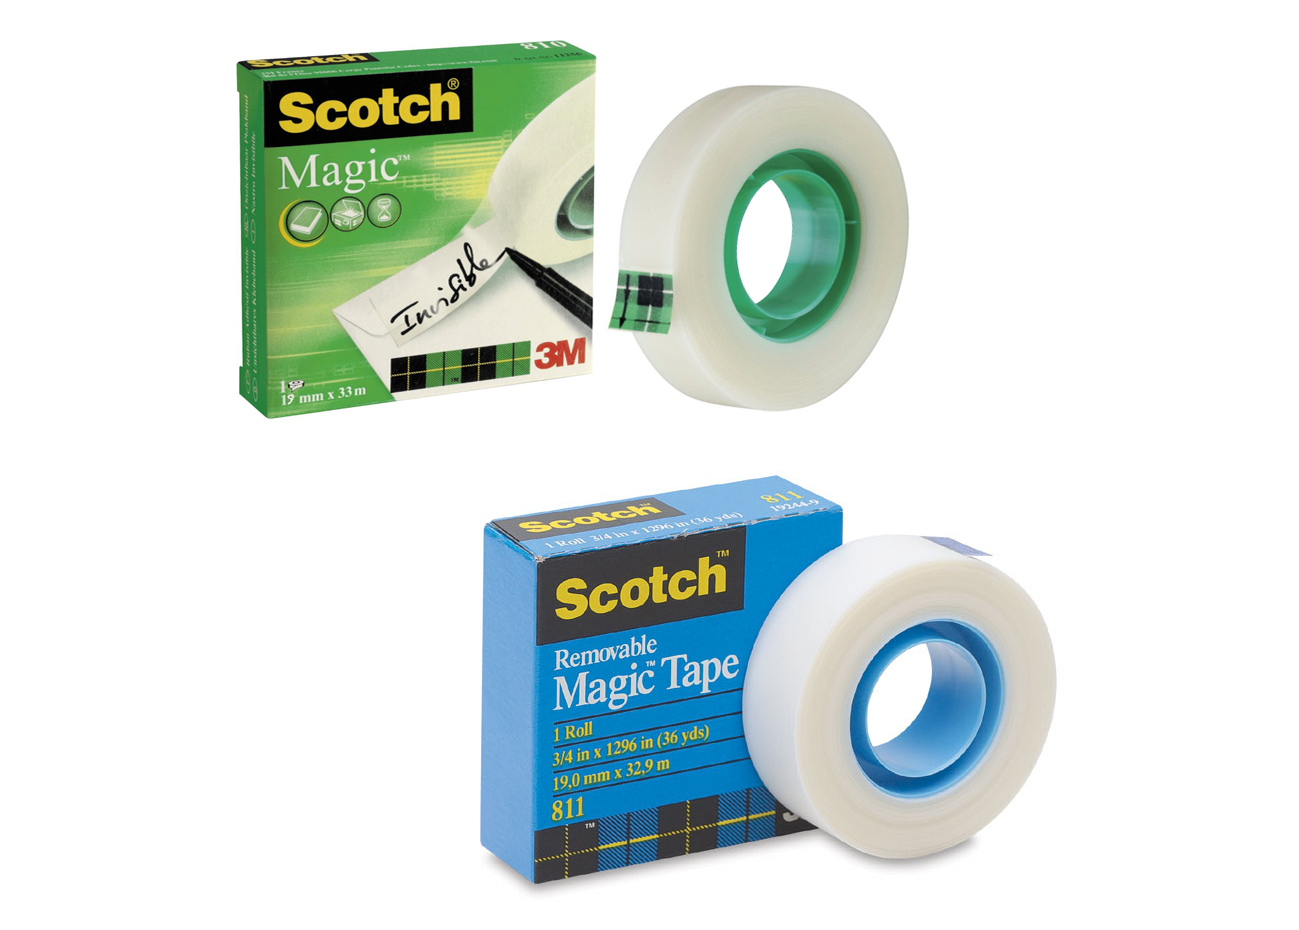 Scotch Magic Mending Tape #810